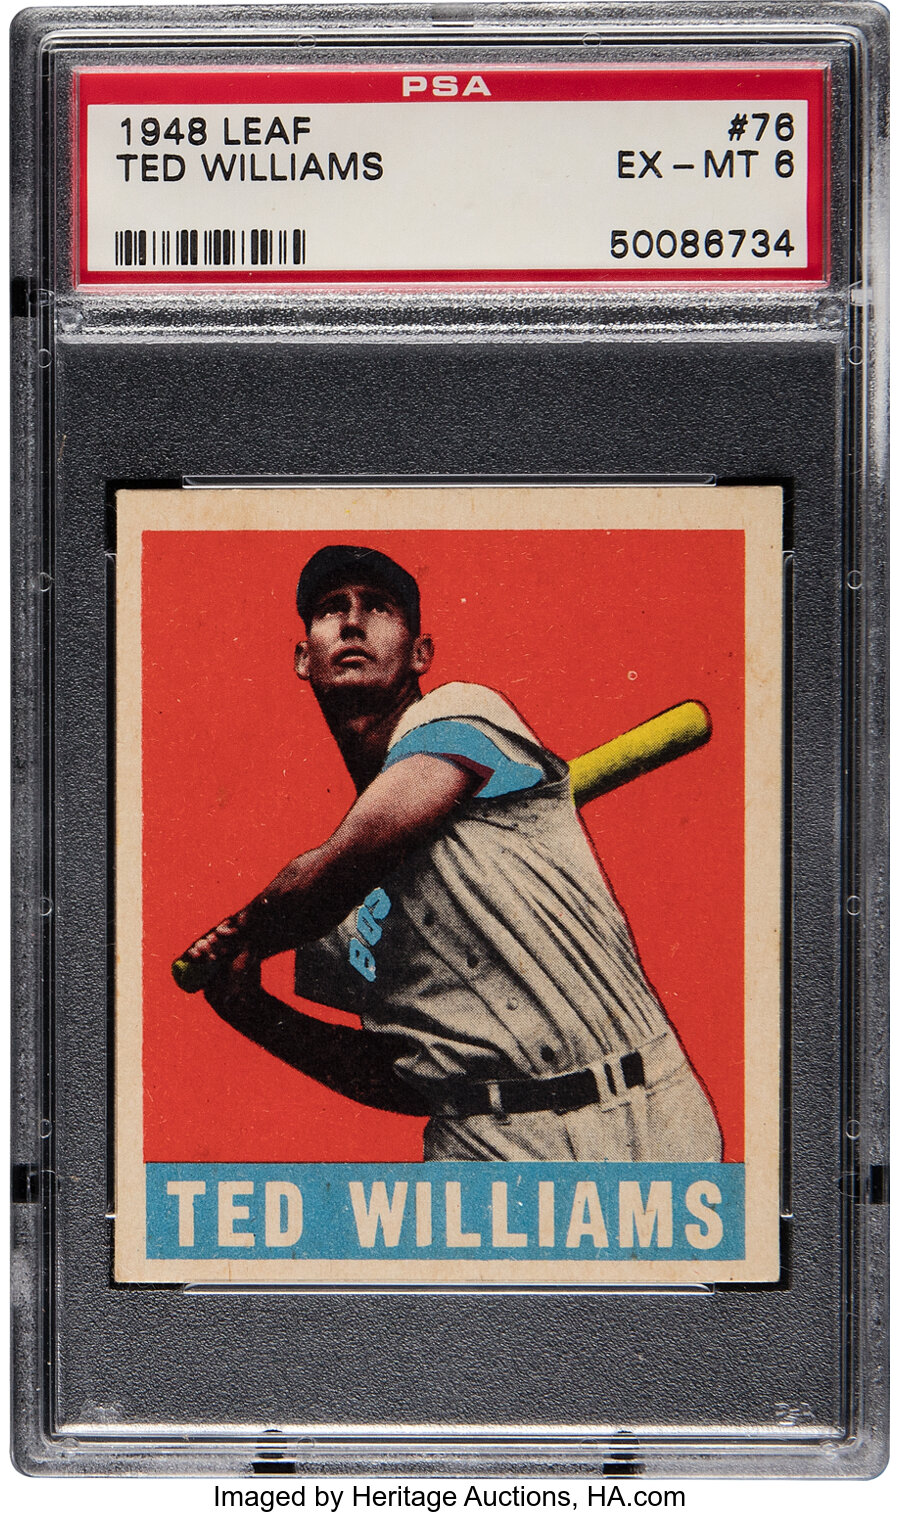 1948 Leaf Ted Williams #76 PSA EX-MT 6